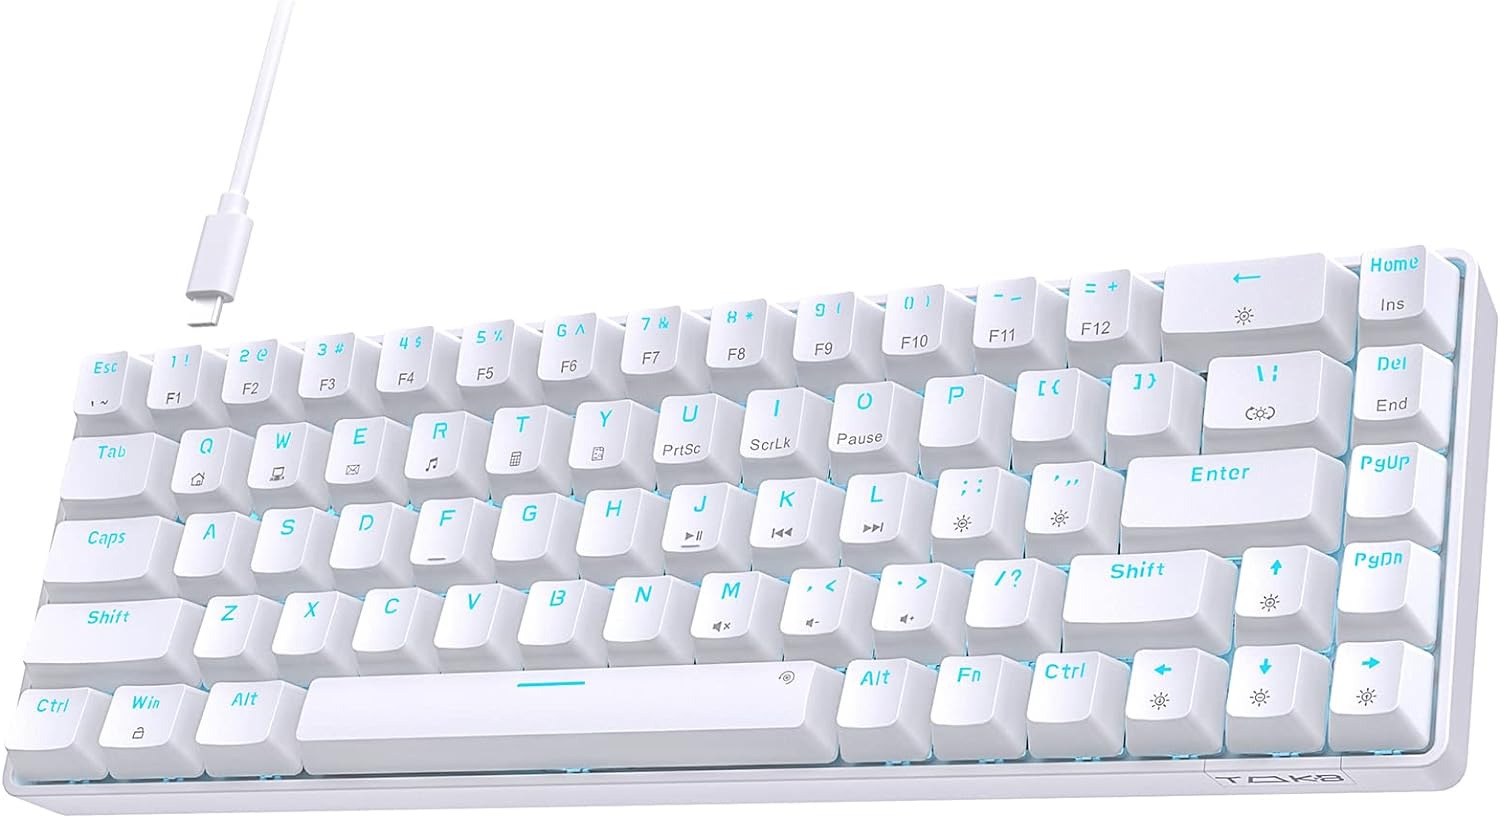 TMKB 60 Percent Keyboard,Gaming Keyboard,Led Backlit Ultra-Compact 68 Keys Gamin